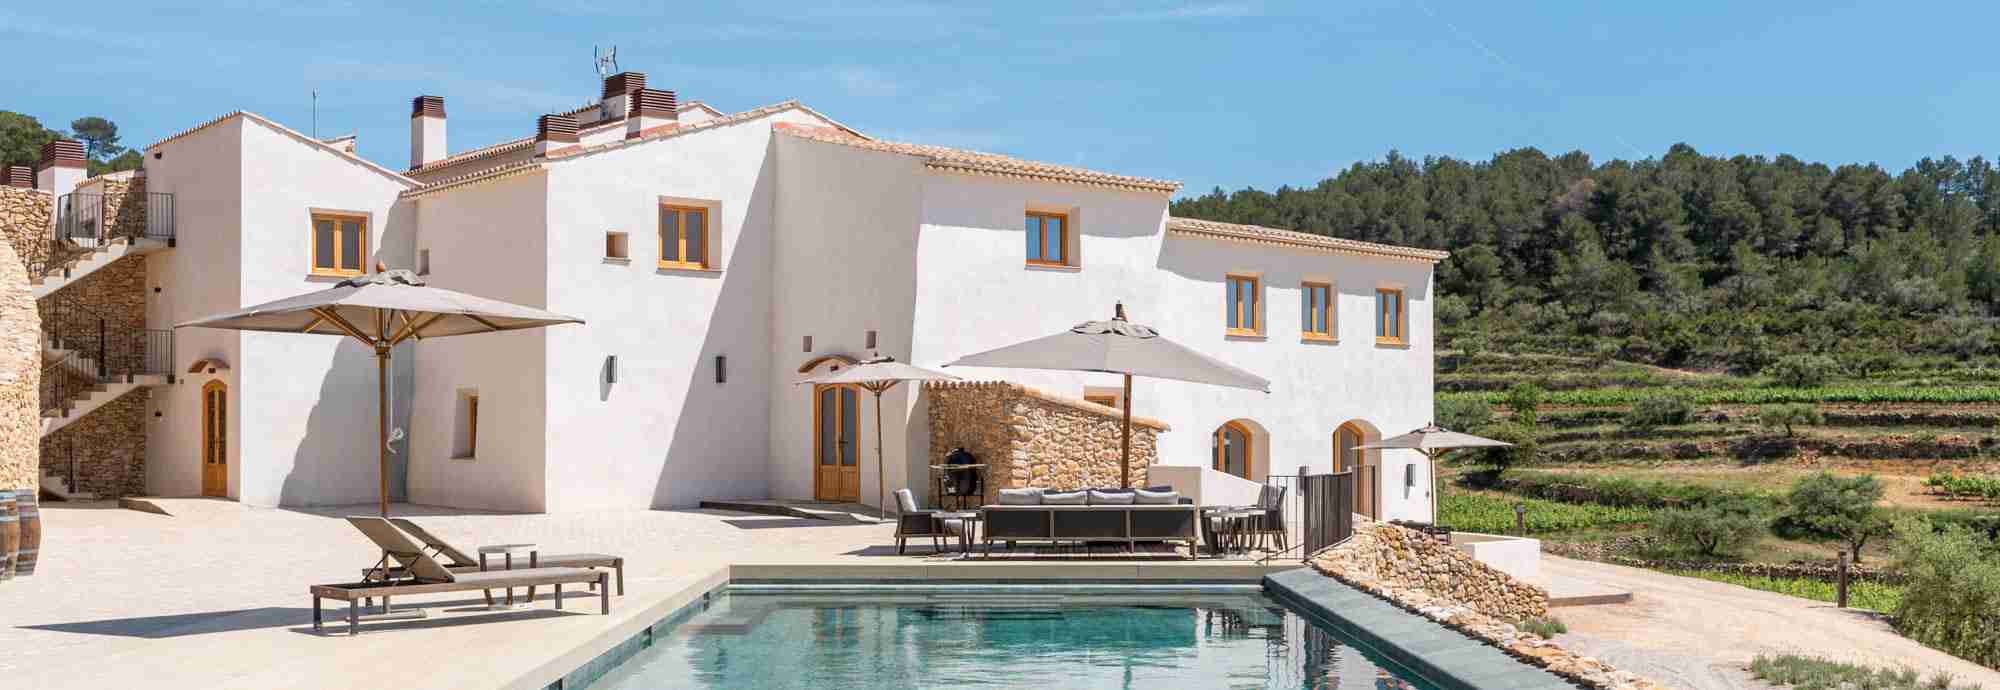 Lujosa y excepcional villa con piscina climatizada rodeada de viñedos